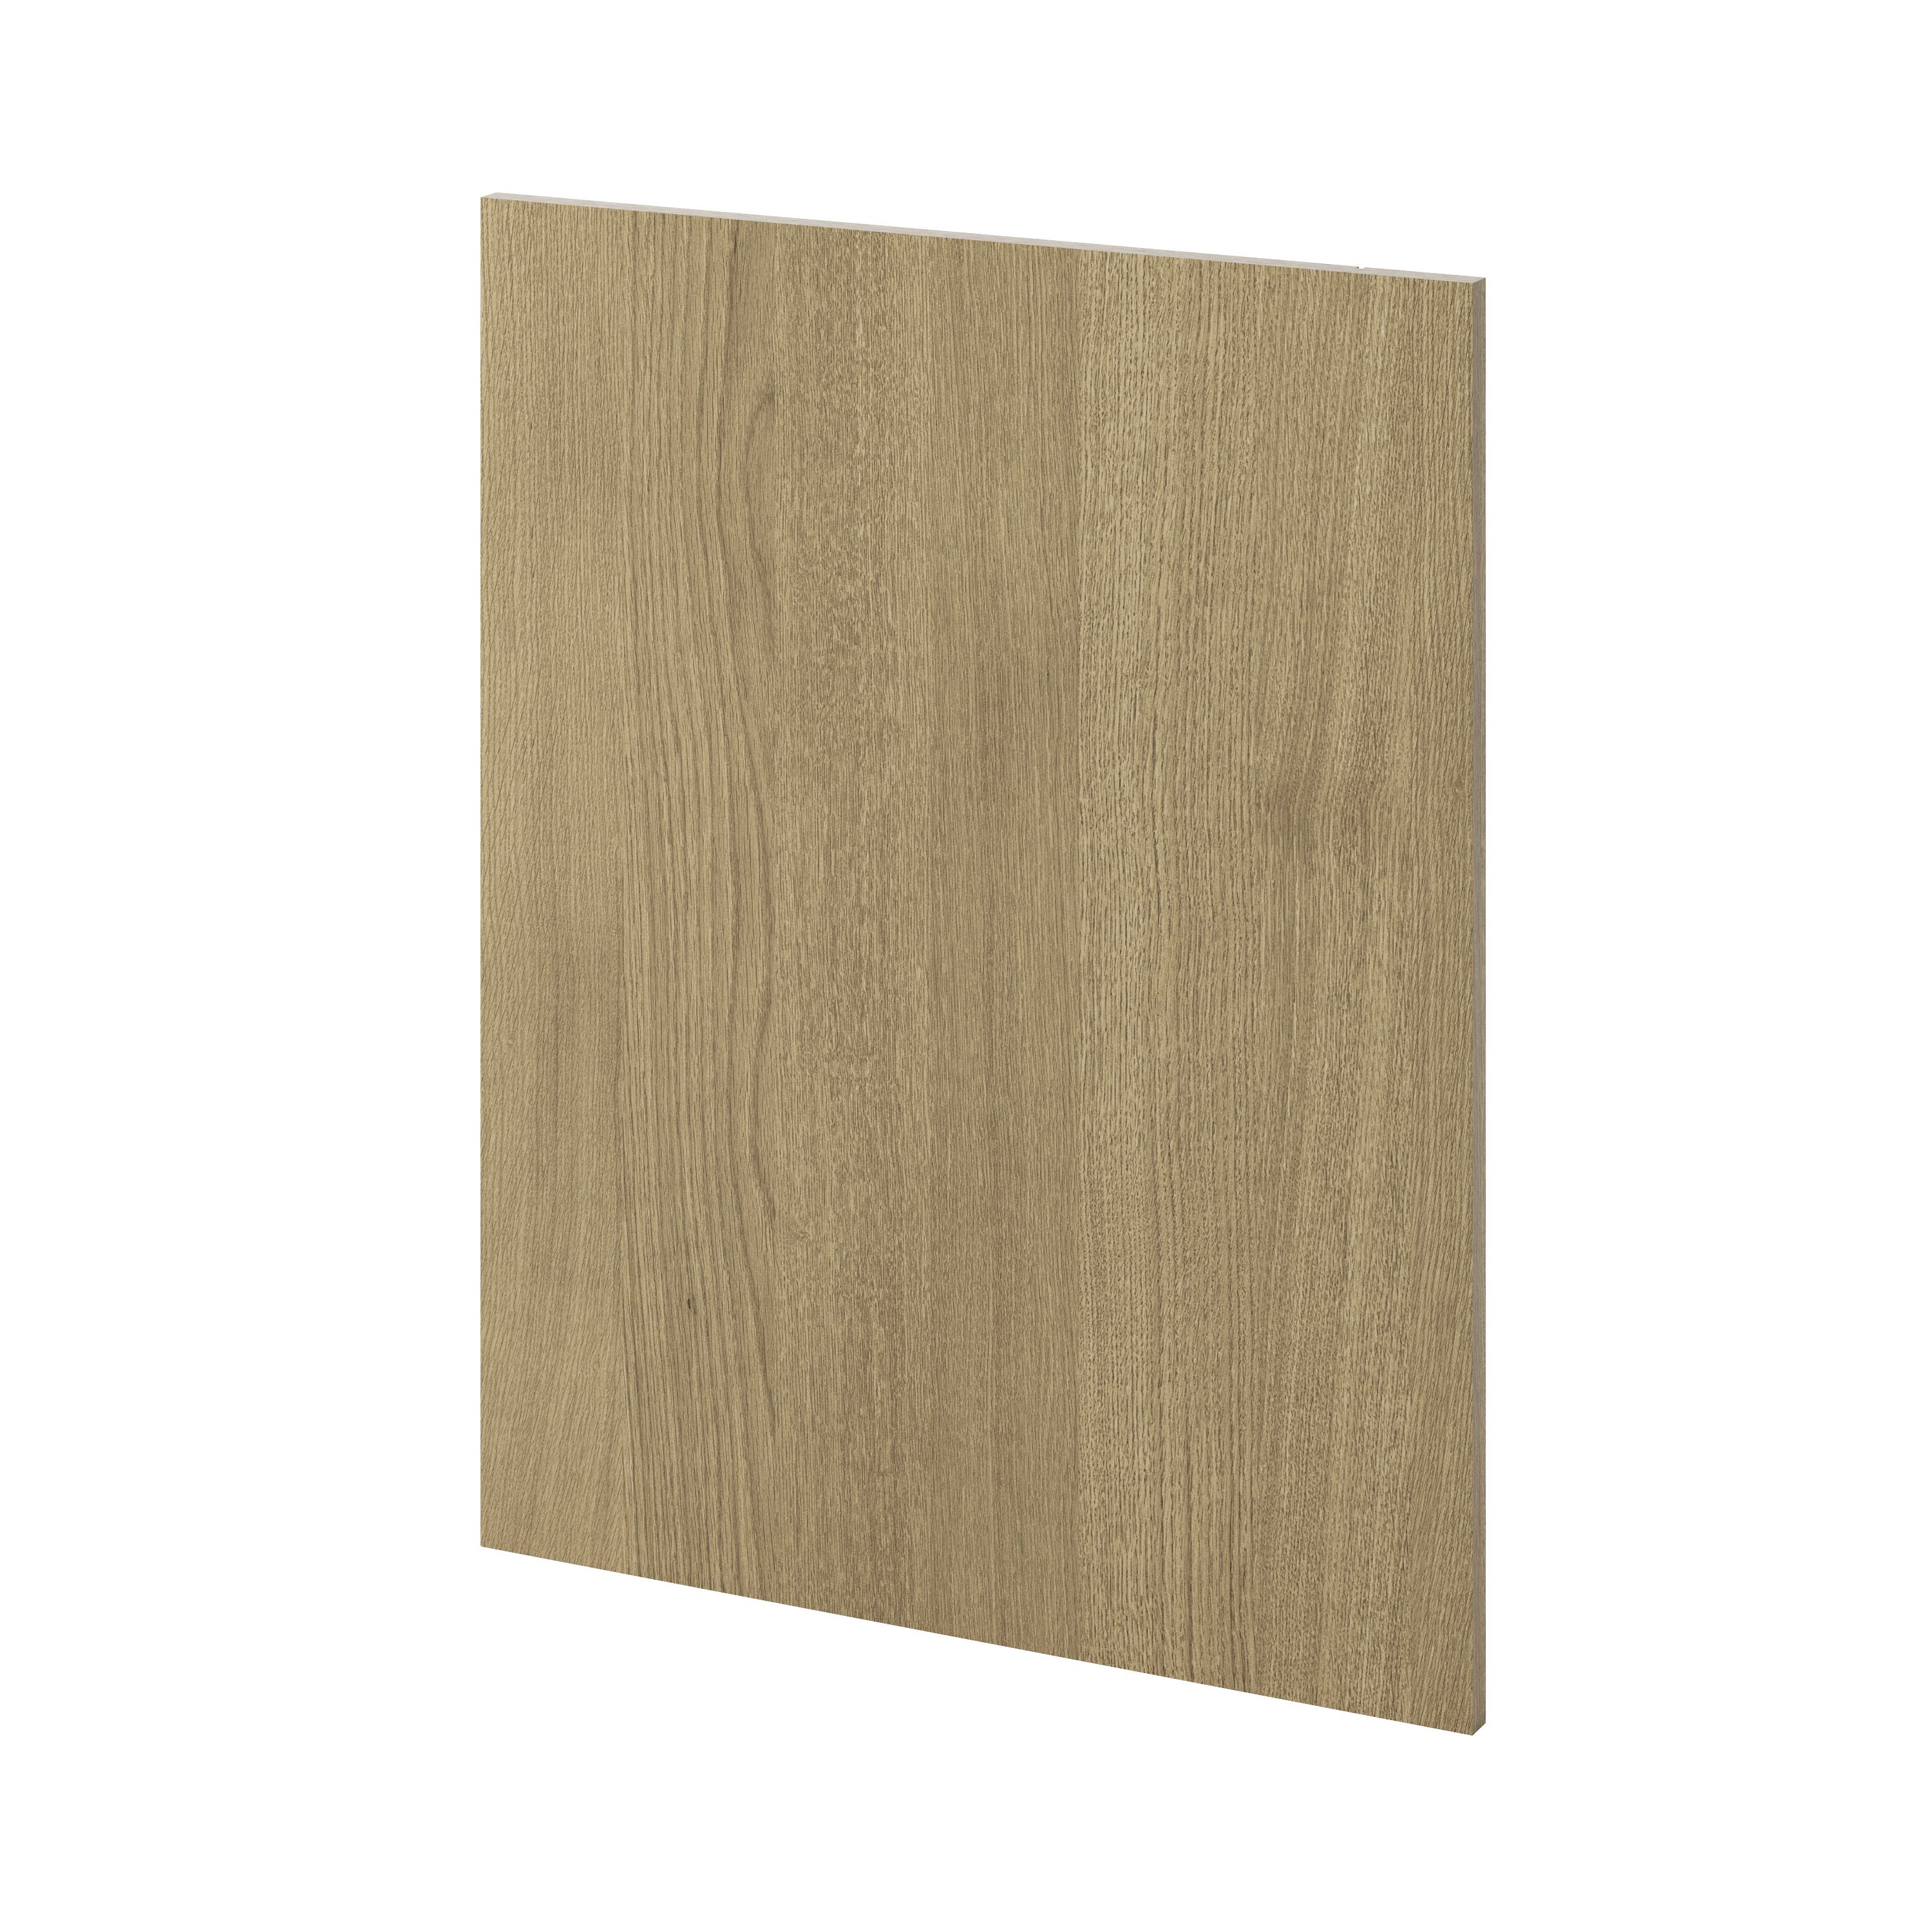 GoodHome Alpinia Oak effect shaker Standard End panel (H)720mm (W)570mm